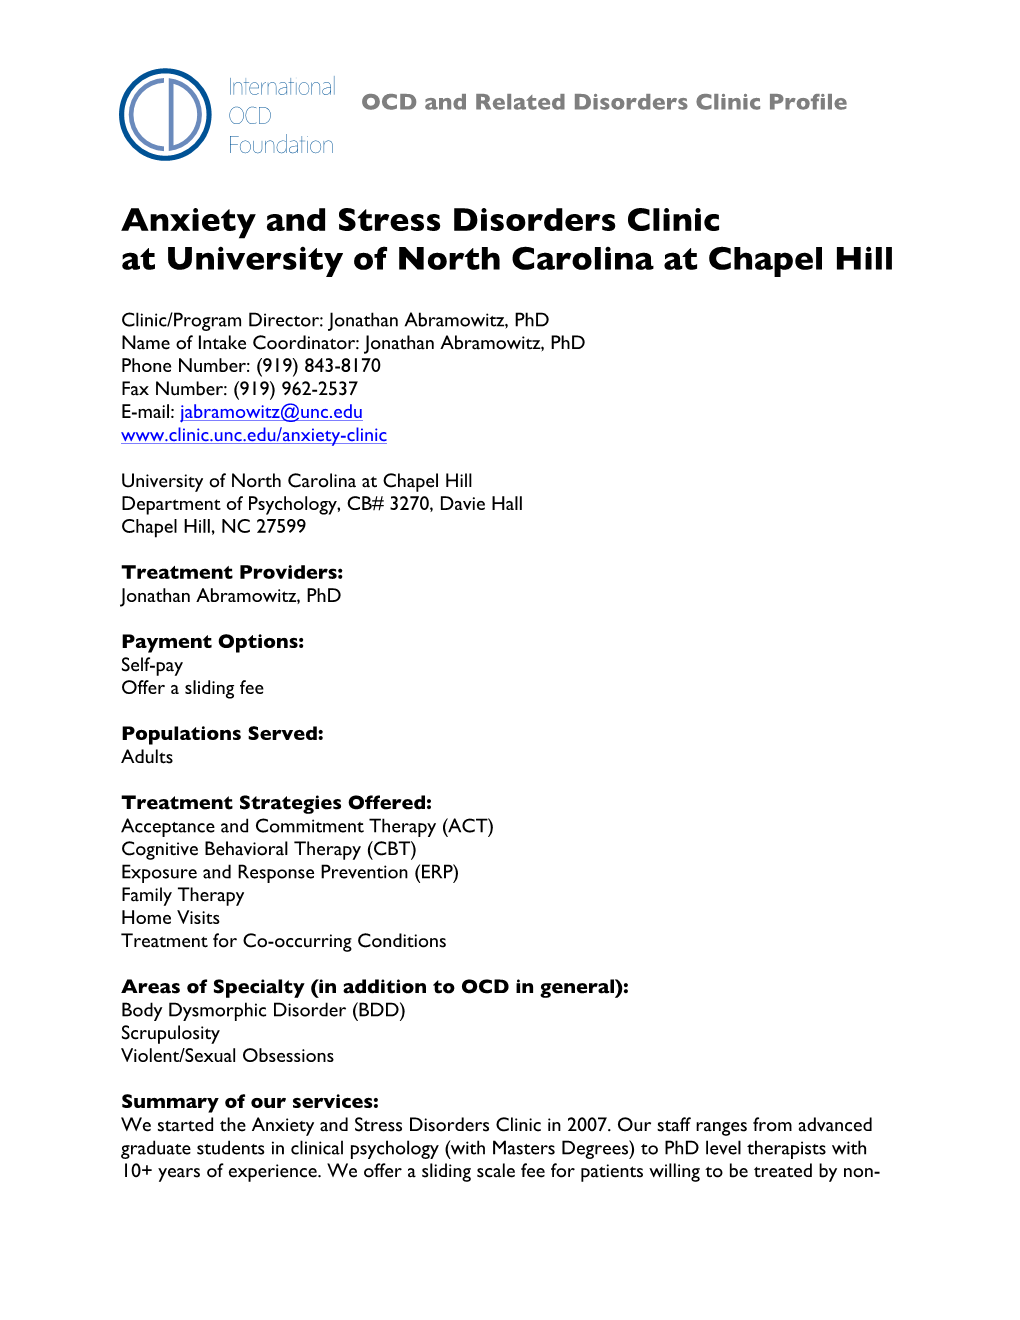 Anxiety and Stress Disorders Clinic at University of North Carolina at Chapel Hill